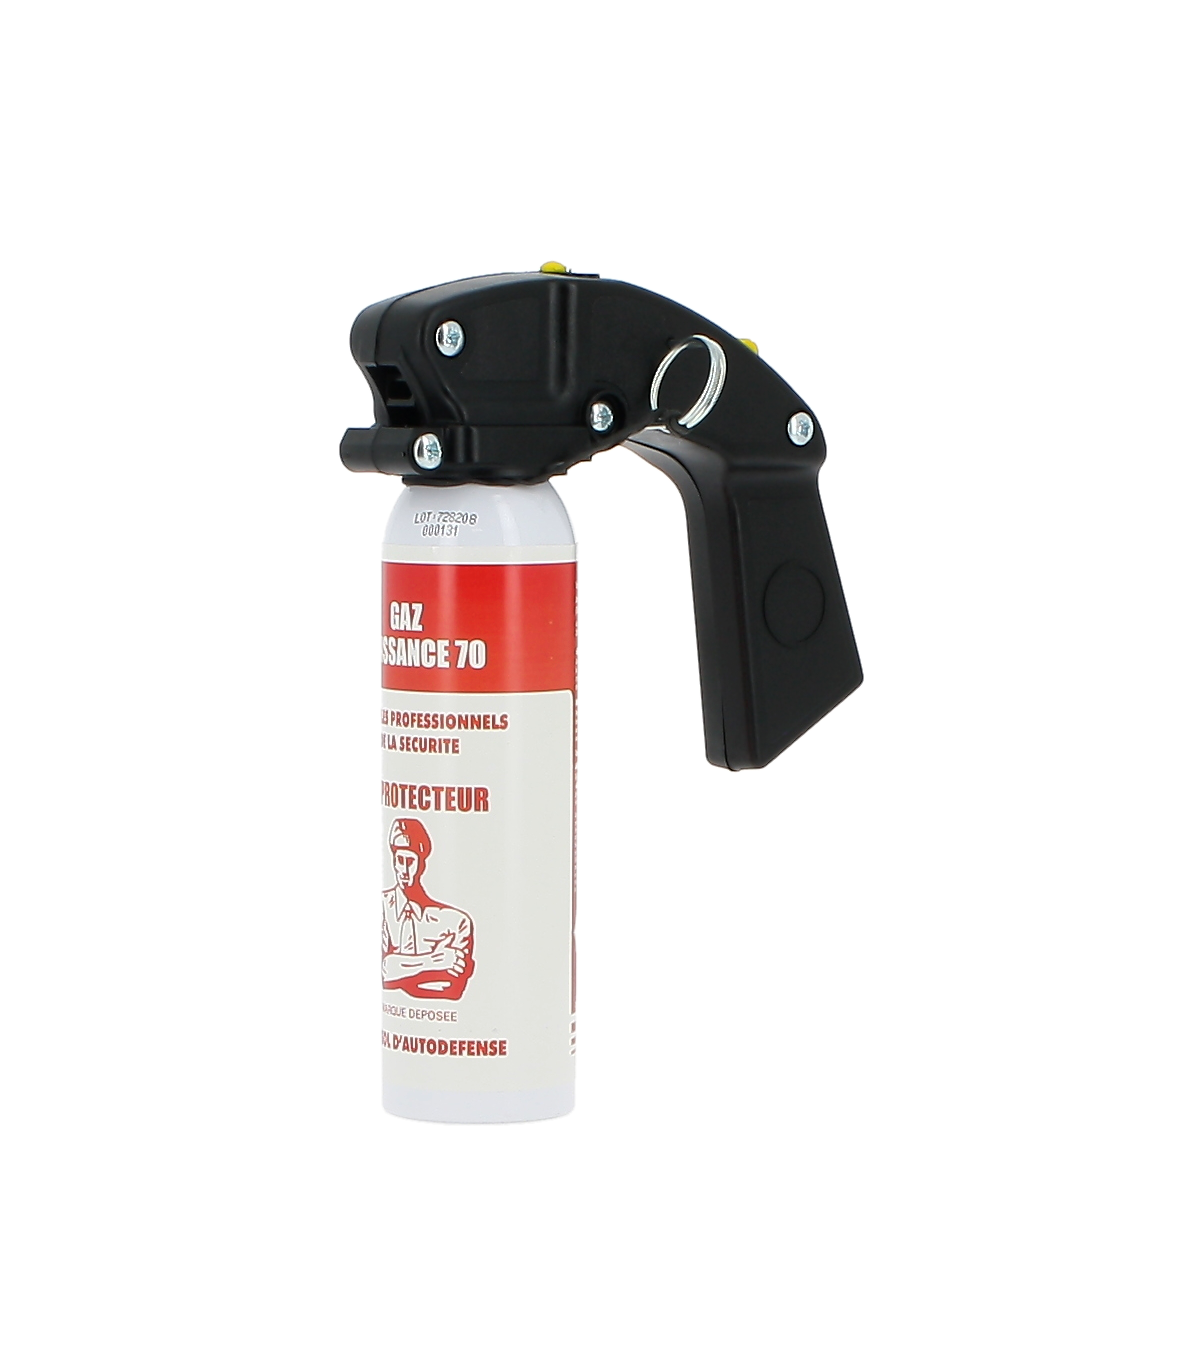 LACRYMO, Guide pratique des sprays de défense & bombes lacrymogènes -  PROTEGOR® sécurité personnelle, self défense & survie urbaine